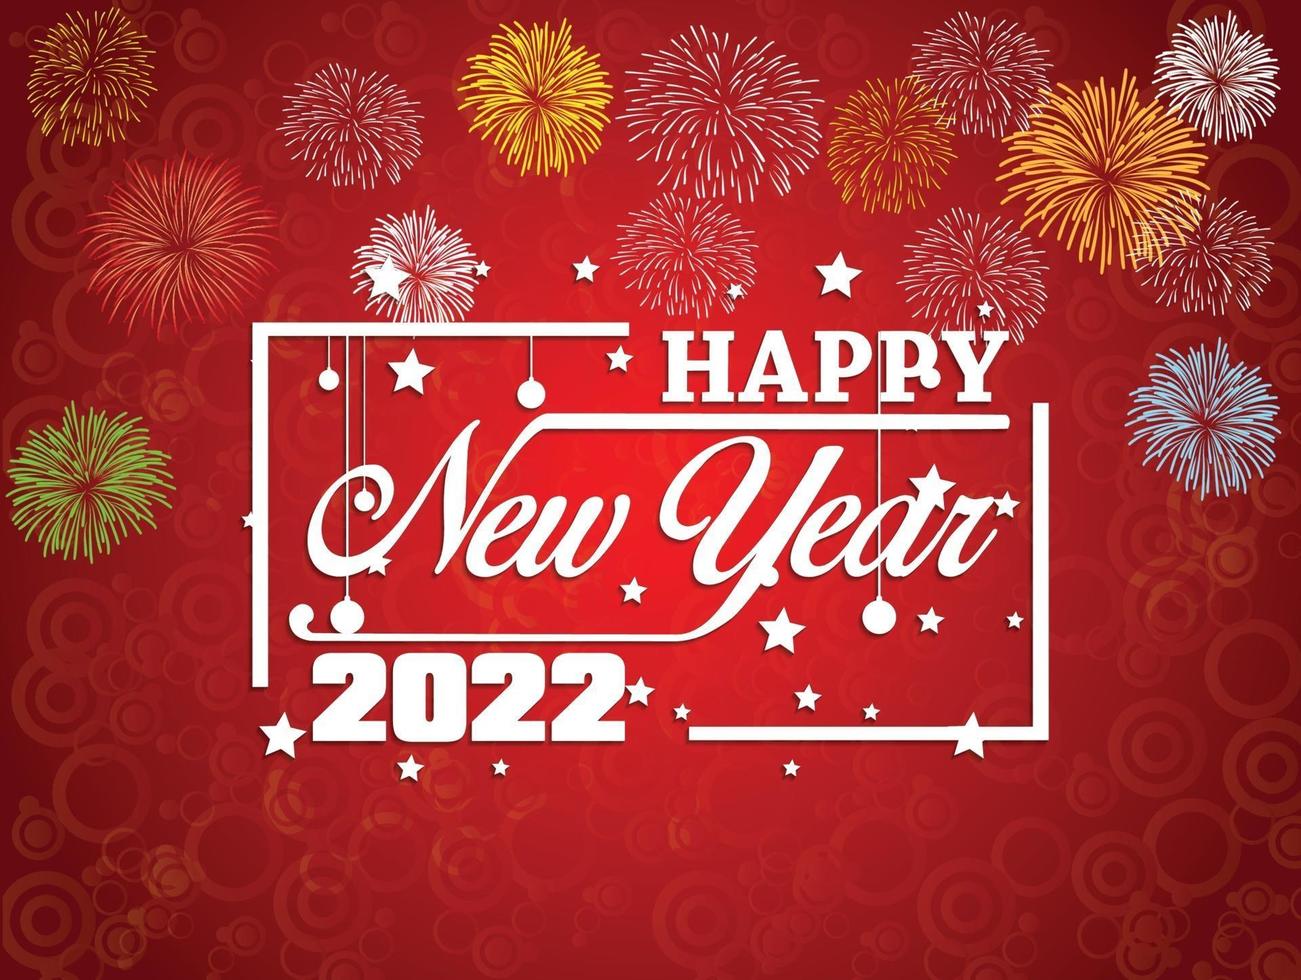 feliz ano novo 2022 com fundos de fogos de artifício vetor